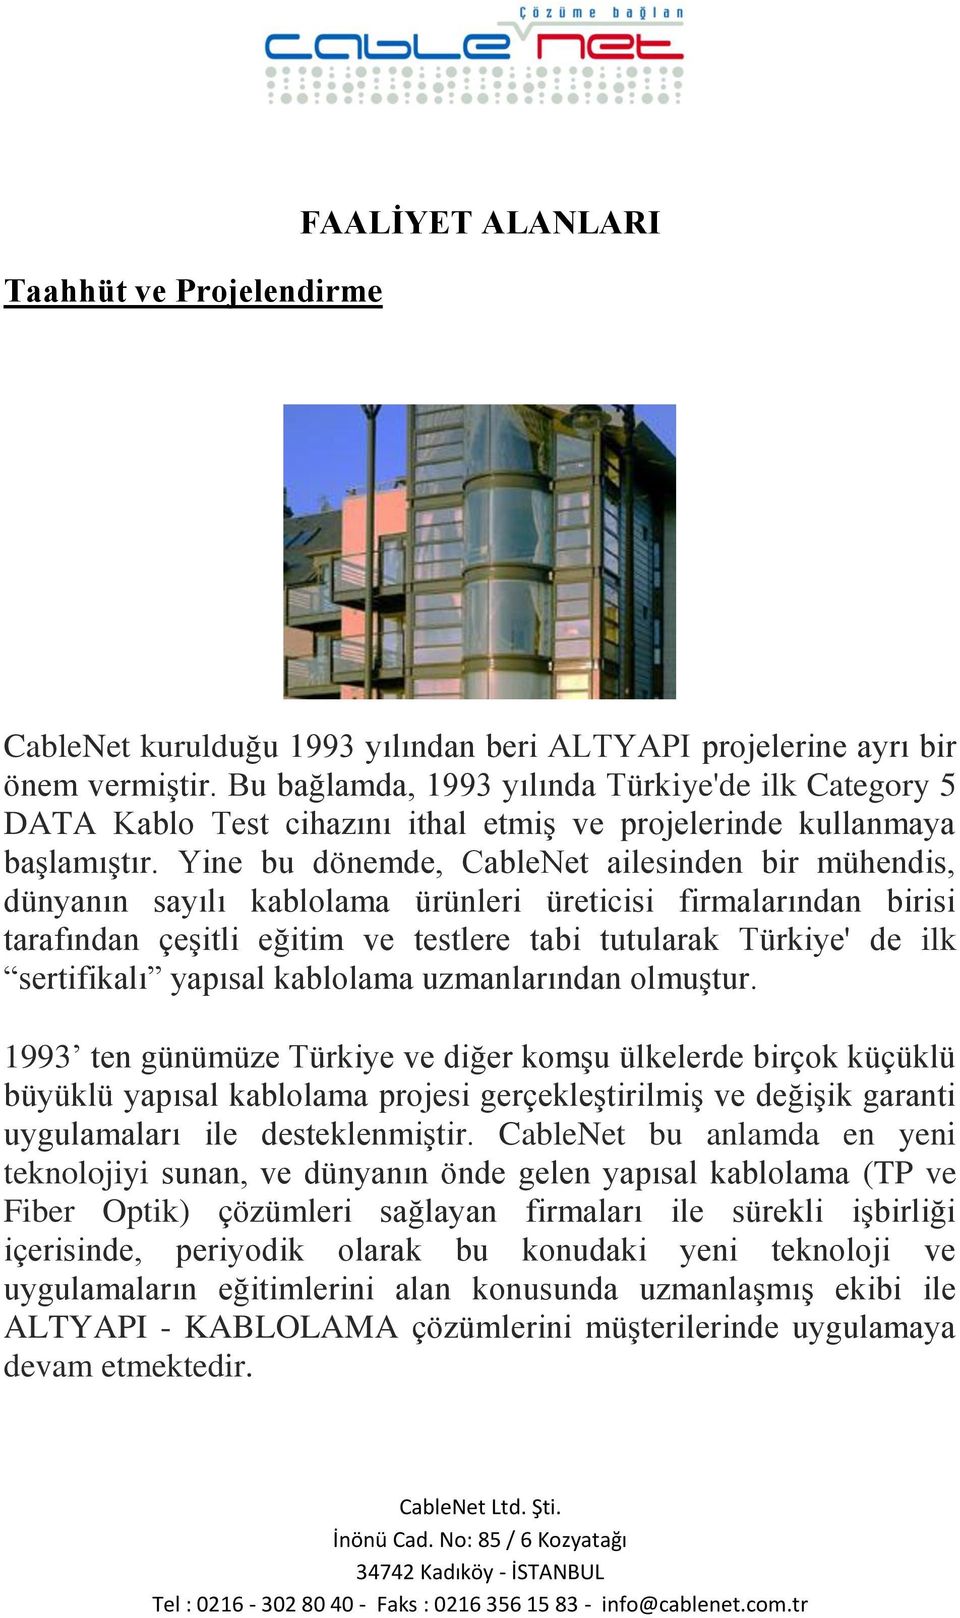 Yine bu dönemde, CableNet ailesinden bir mühendis, dünyanın sayılı kablolama ürünleri üreticisi firmalarından birisi tarafından çeşitli eğitim ve testlere tabi tutularak Türkiye' de ilk sertifikalı